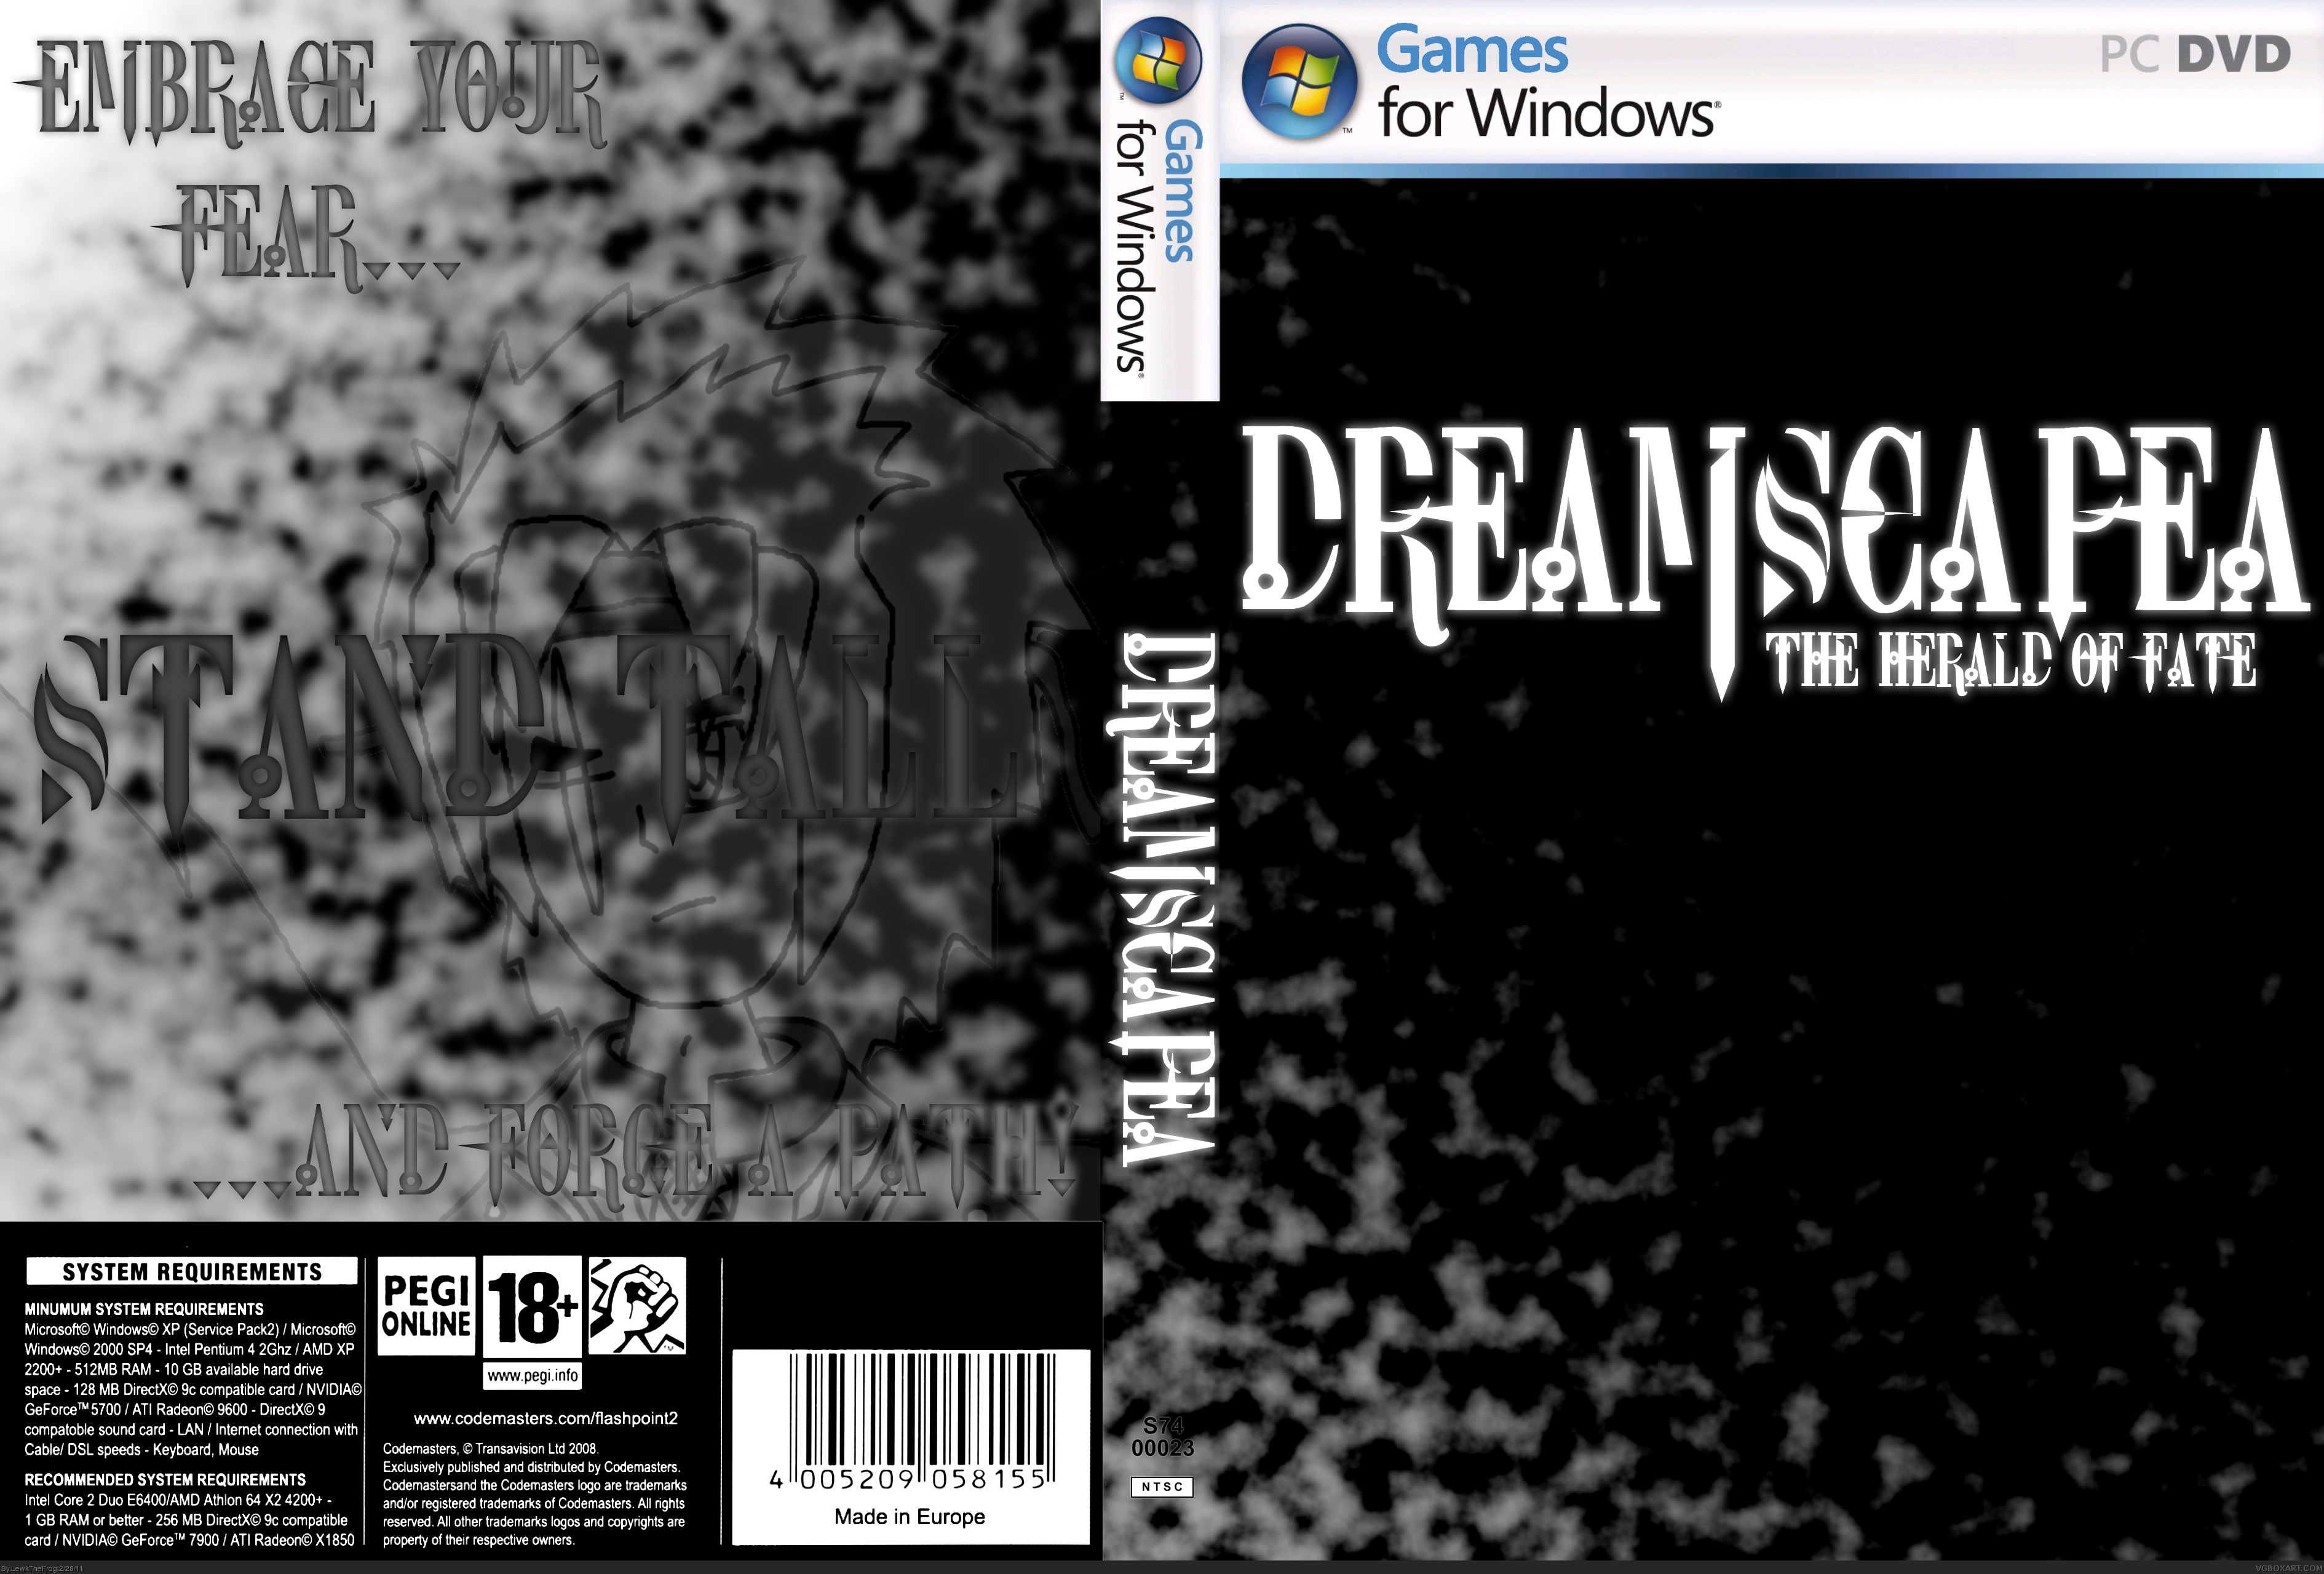 Dreamscapea box cover